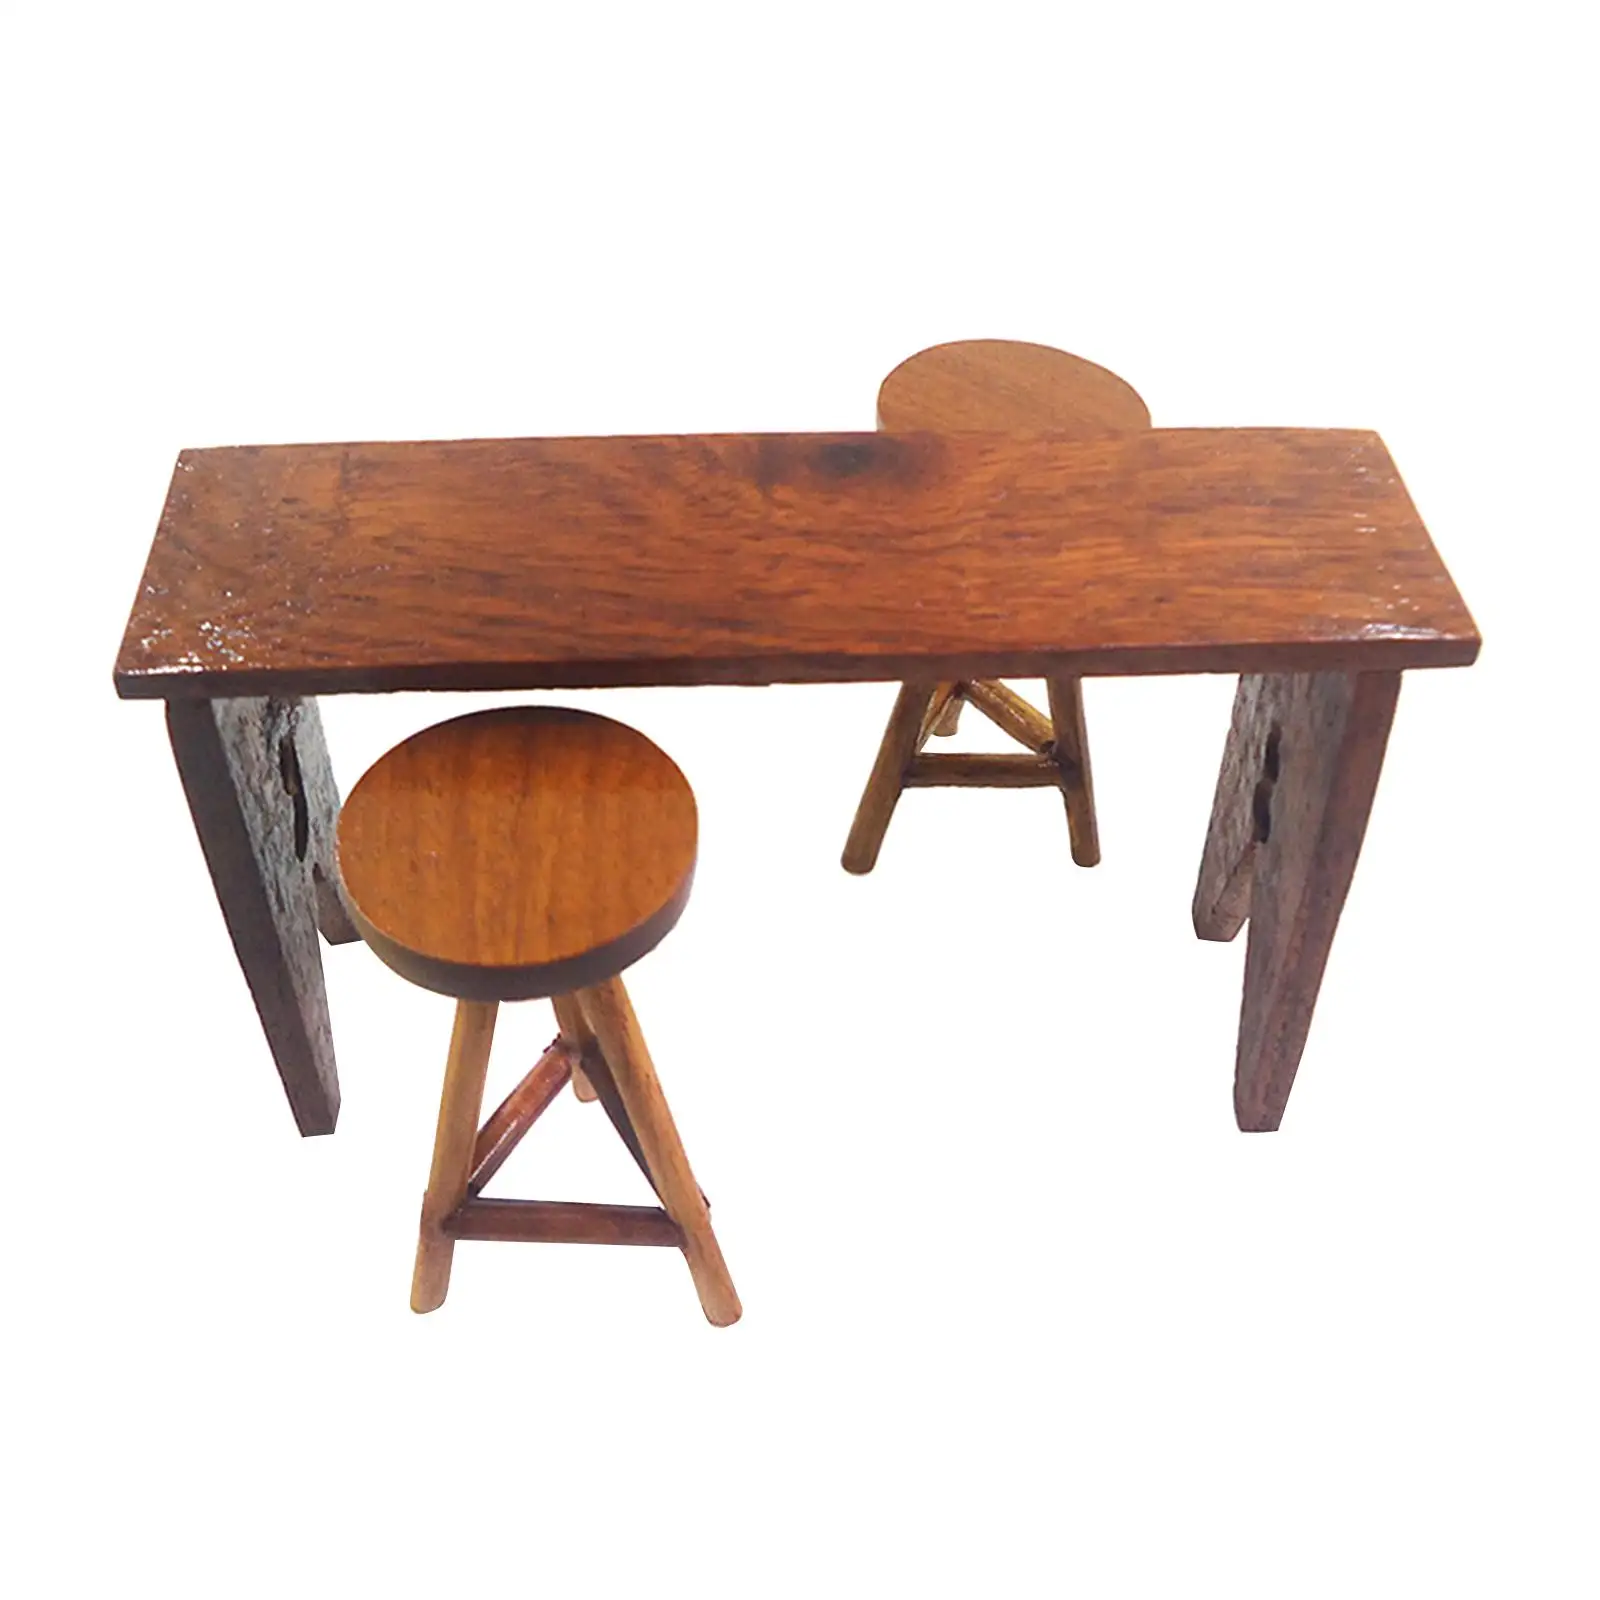 Miniature Bar Table High Chair Decorations 1:12 Desk Stool for Dollhouse DIY